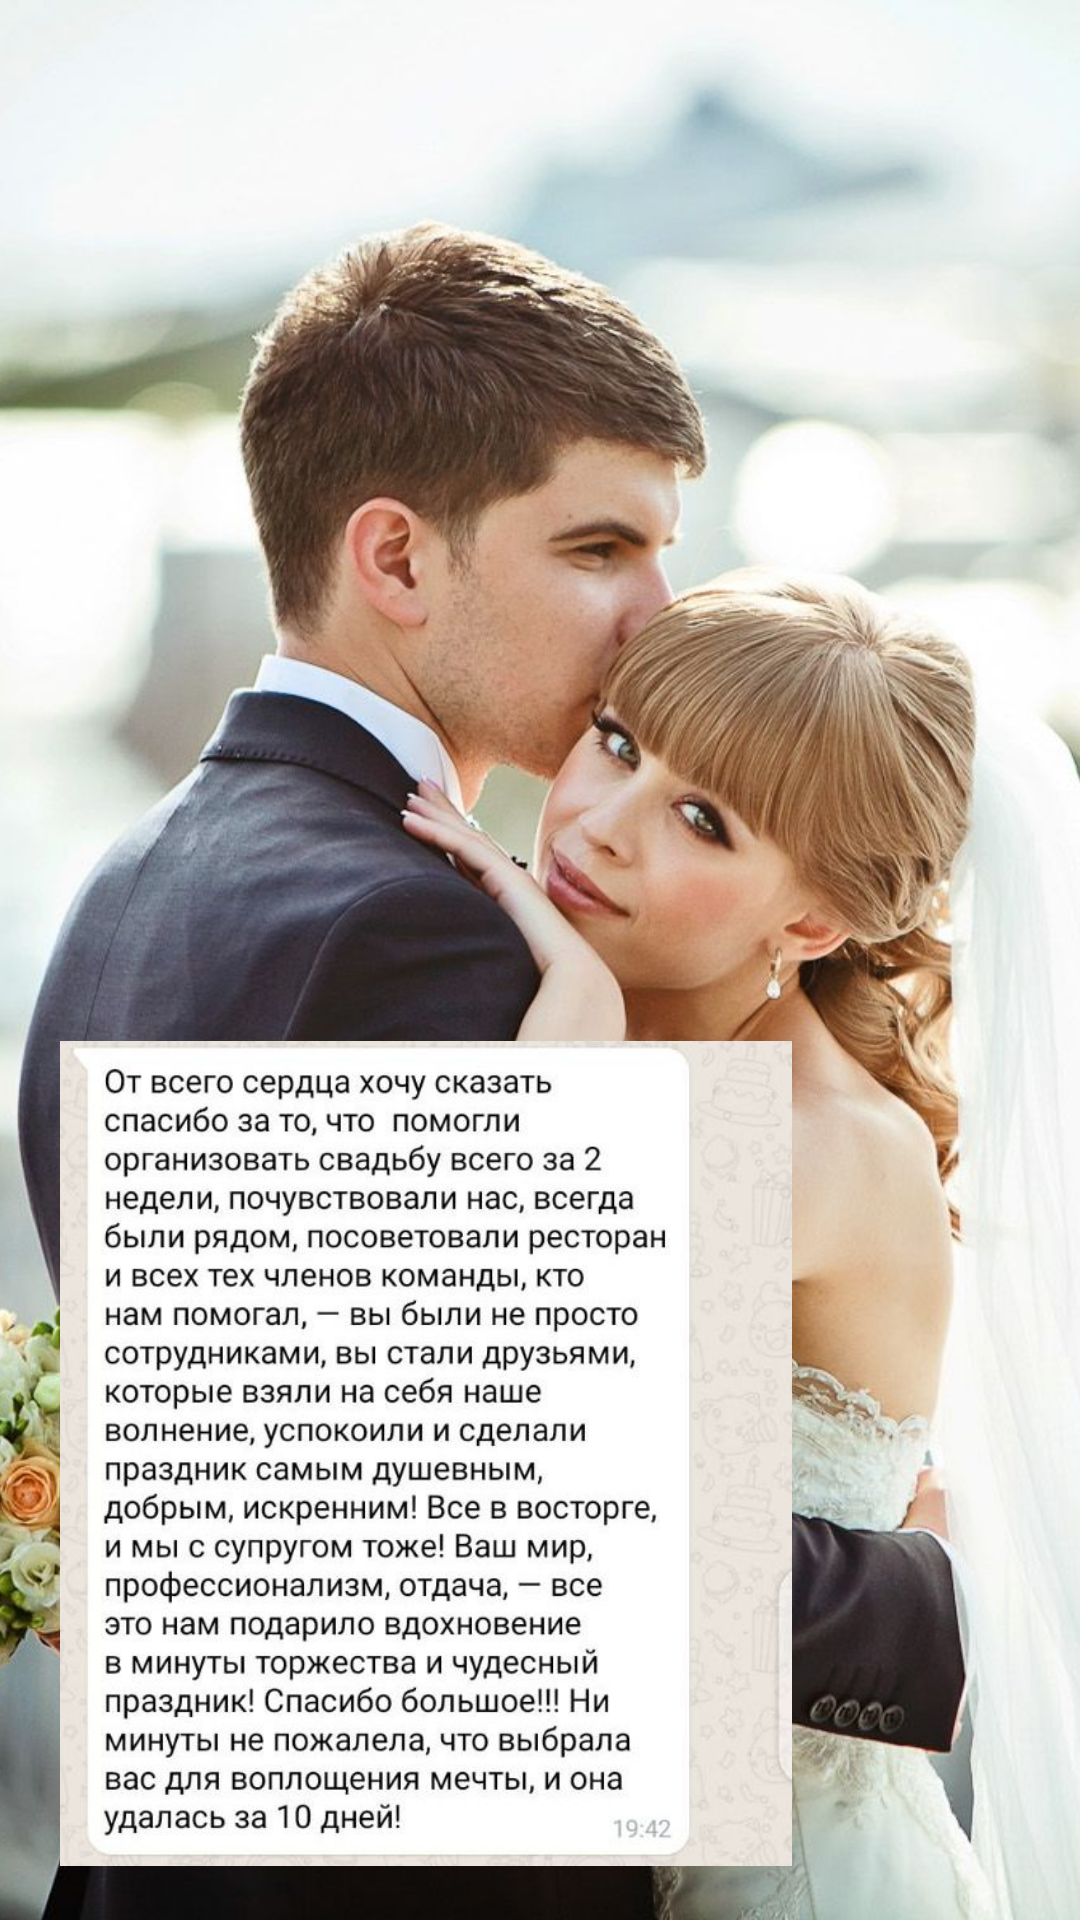 Организация свадьбы в Барнауле
от компании Pandaevent